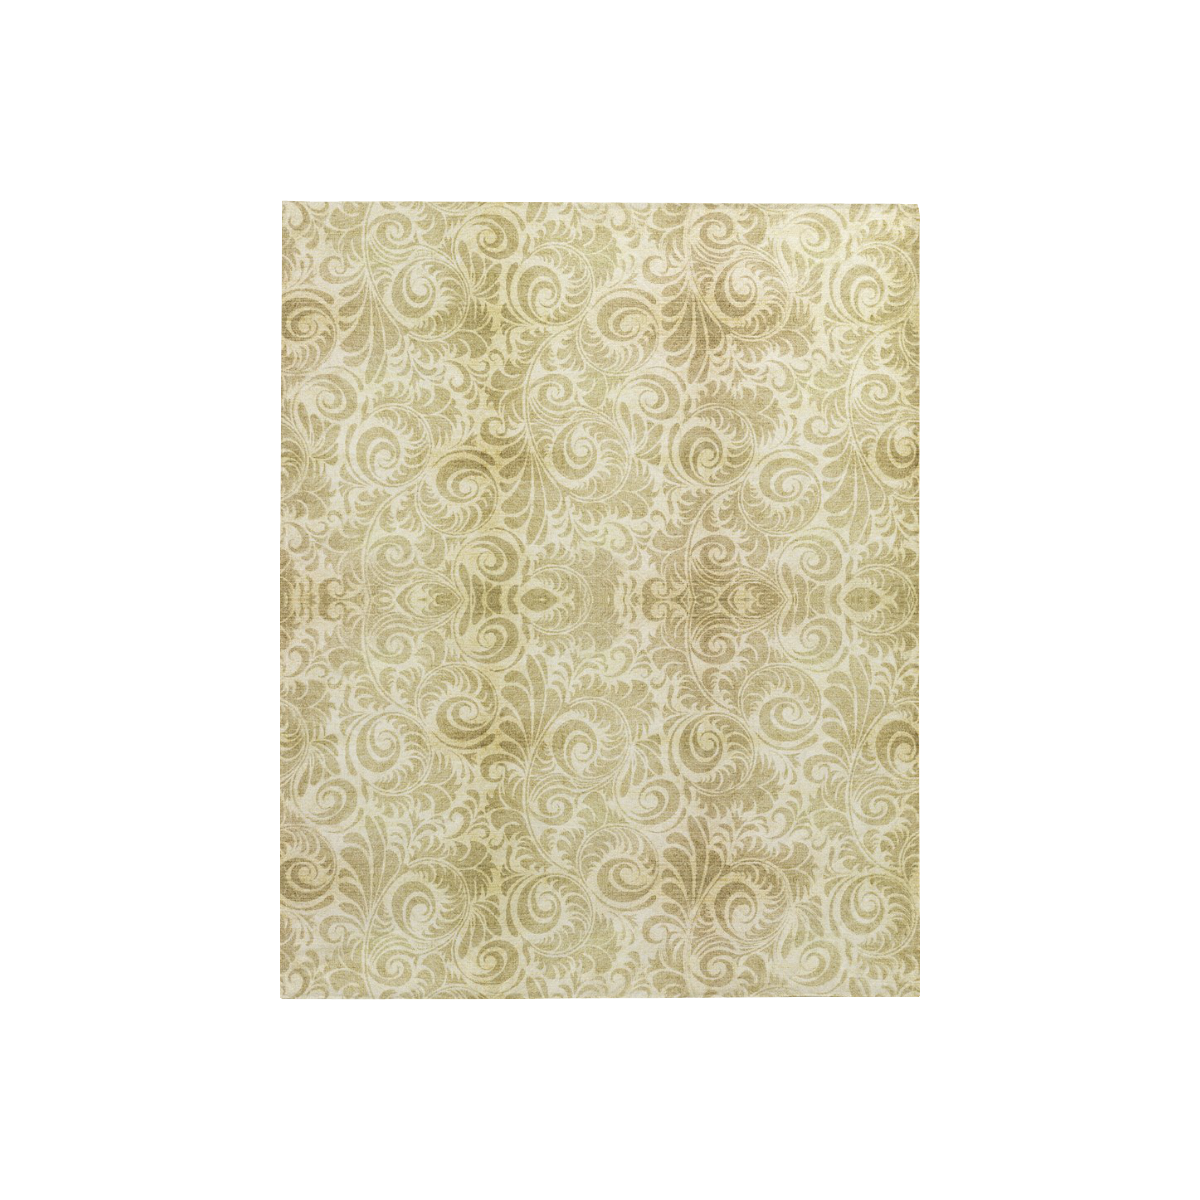 Denim, vintage floral pattern, beige gold yellow Quilt 40"x50"